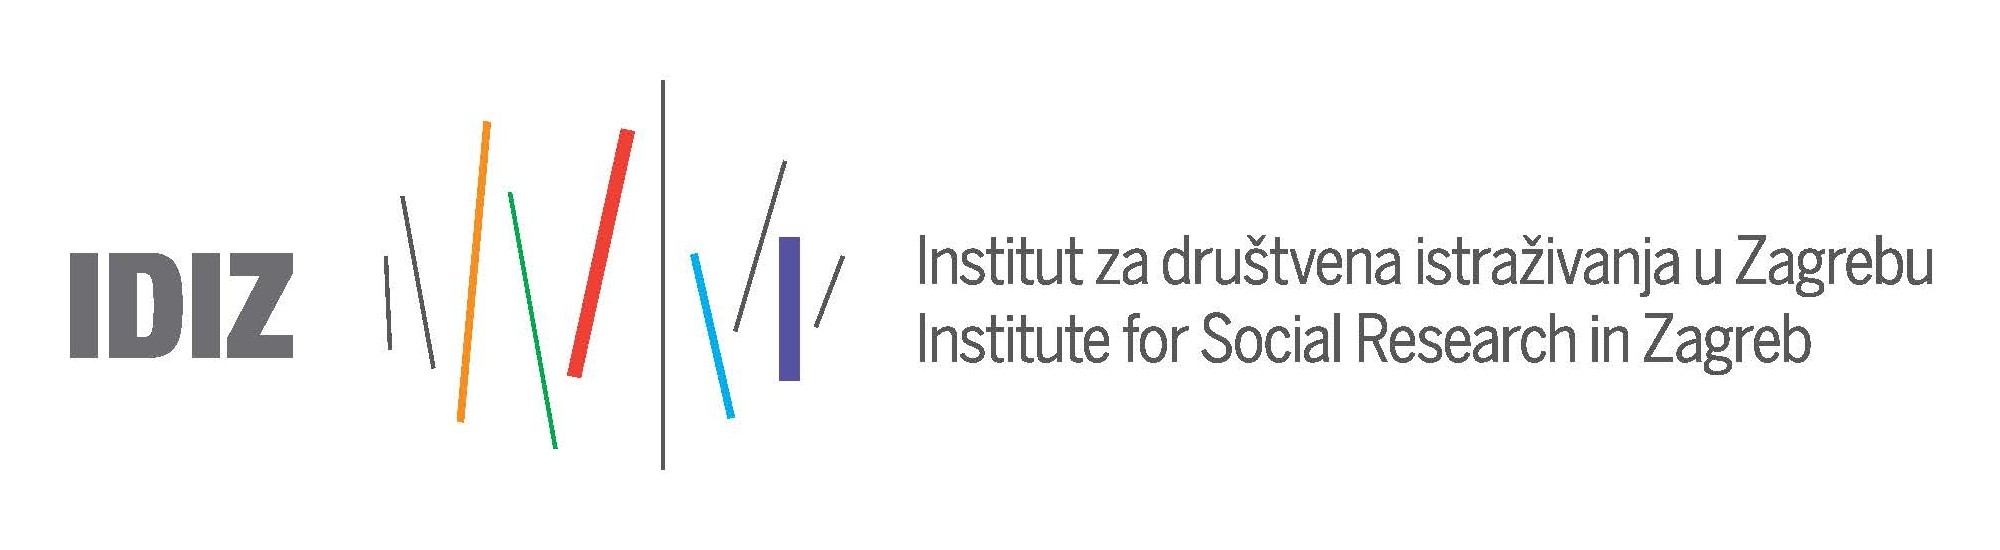 Institute for Social Research in Zagreb logo